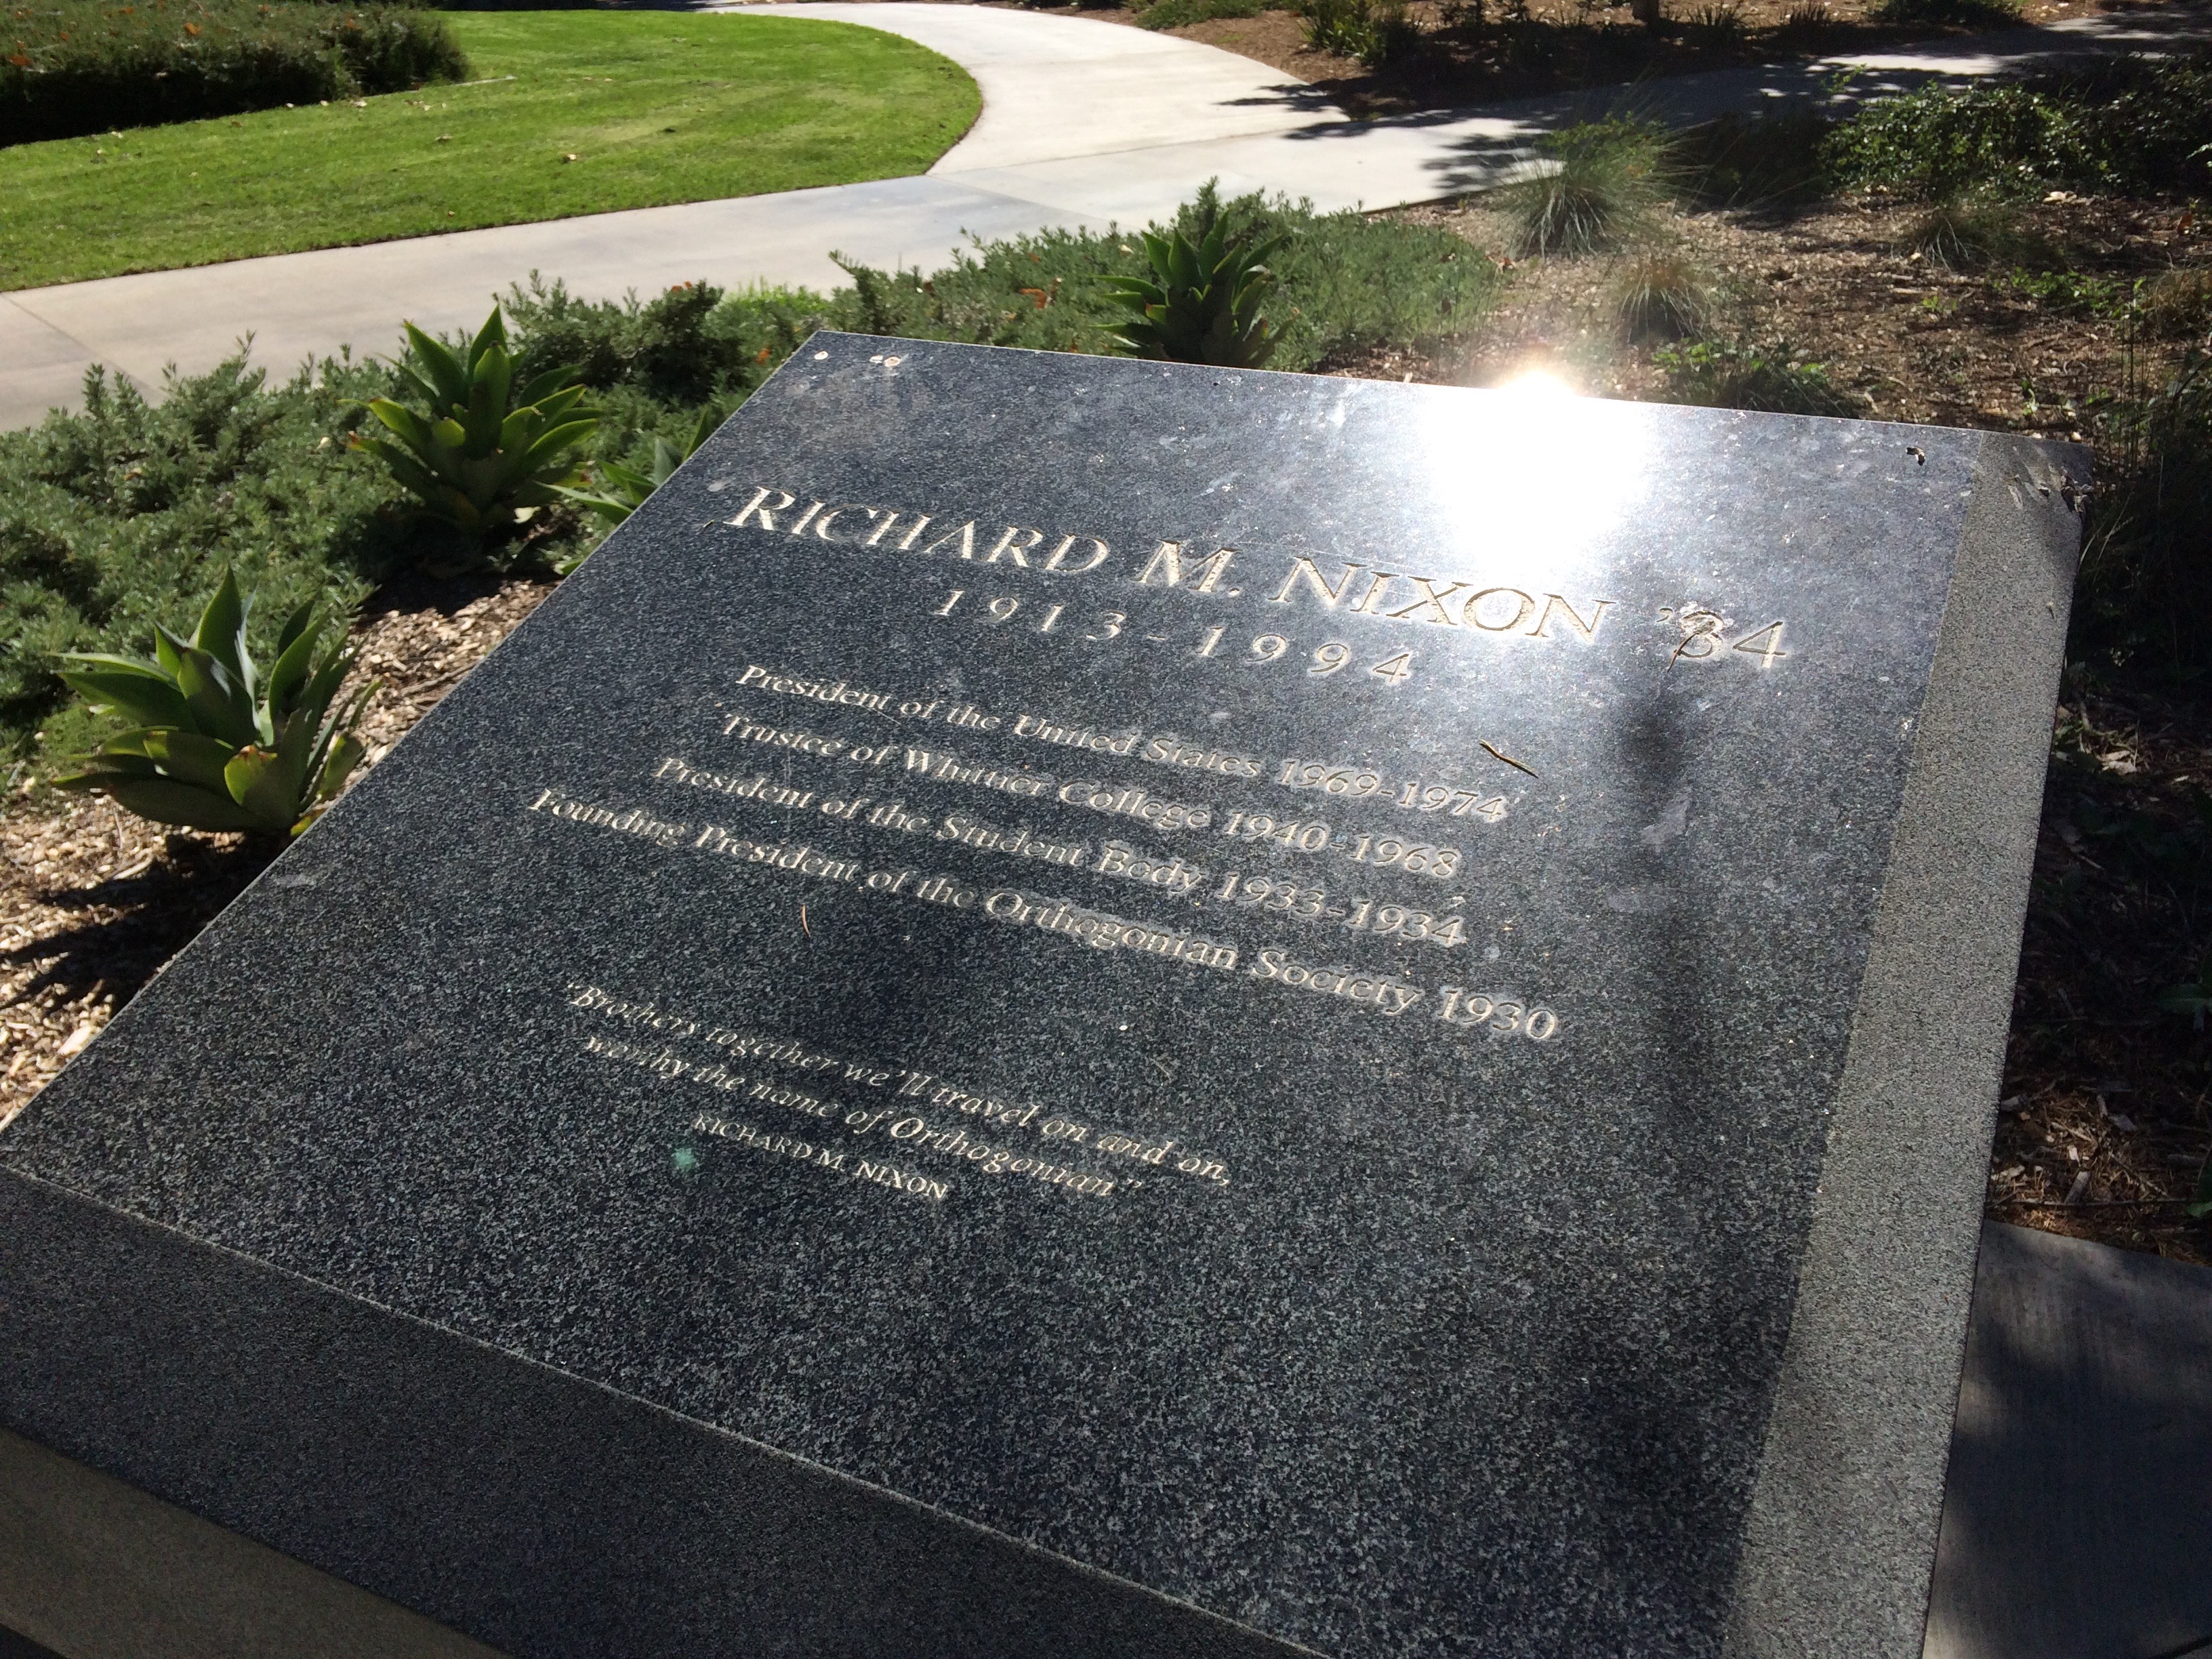 No one's visiting Nixon's memorial.